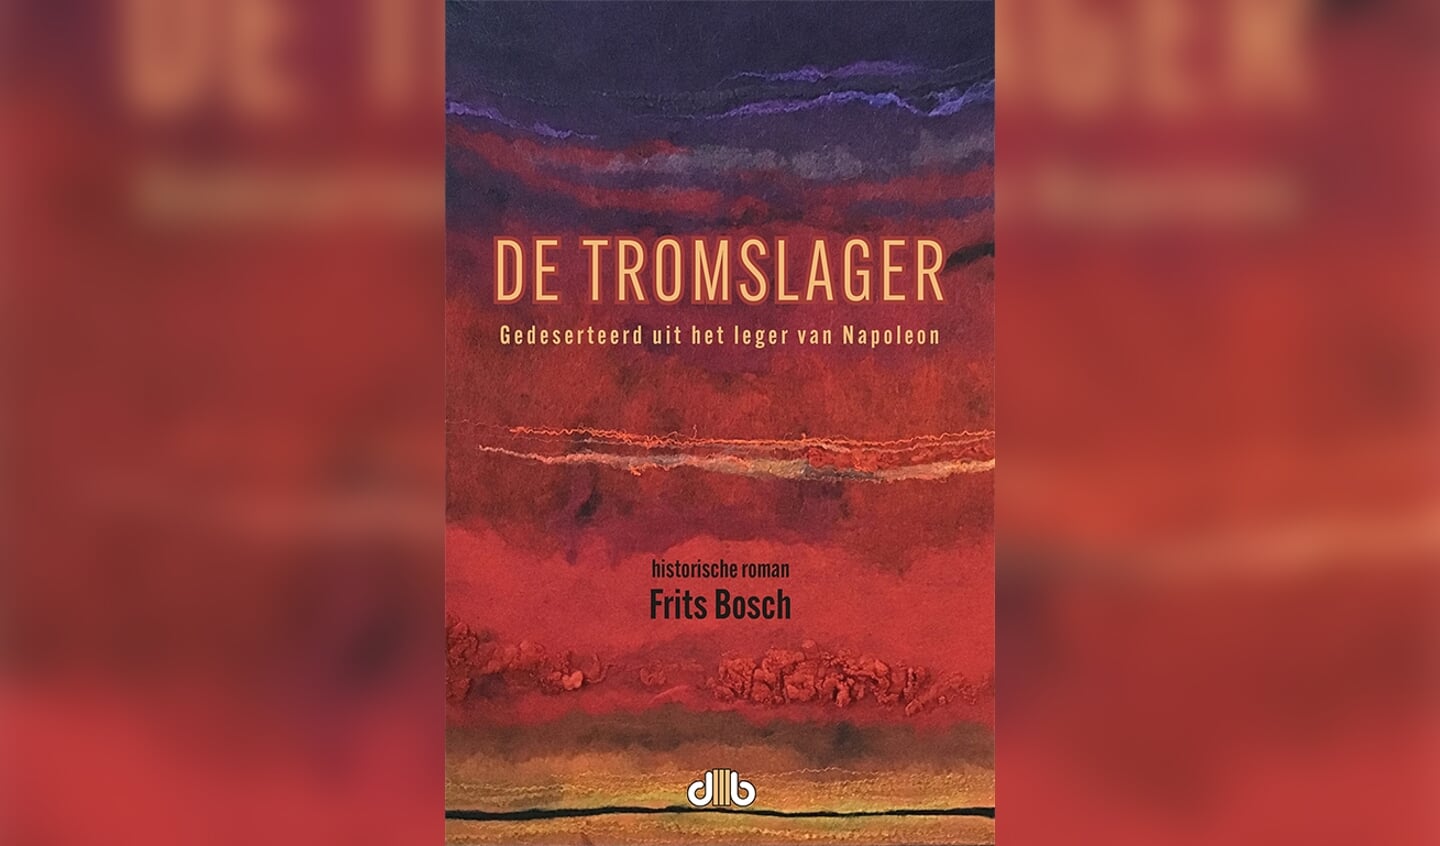 Cover van ‘De Tromslager’ door Frits Bosch.